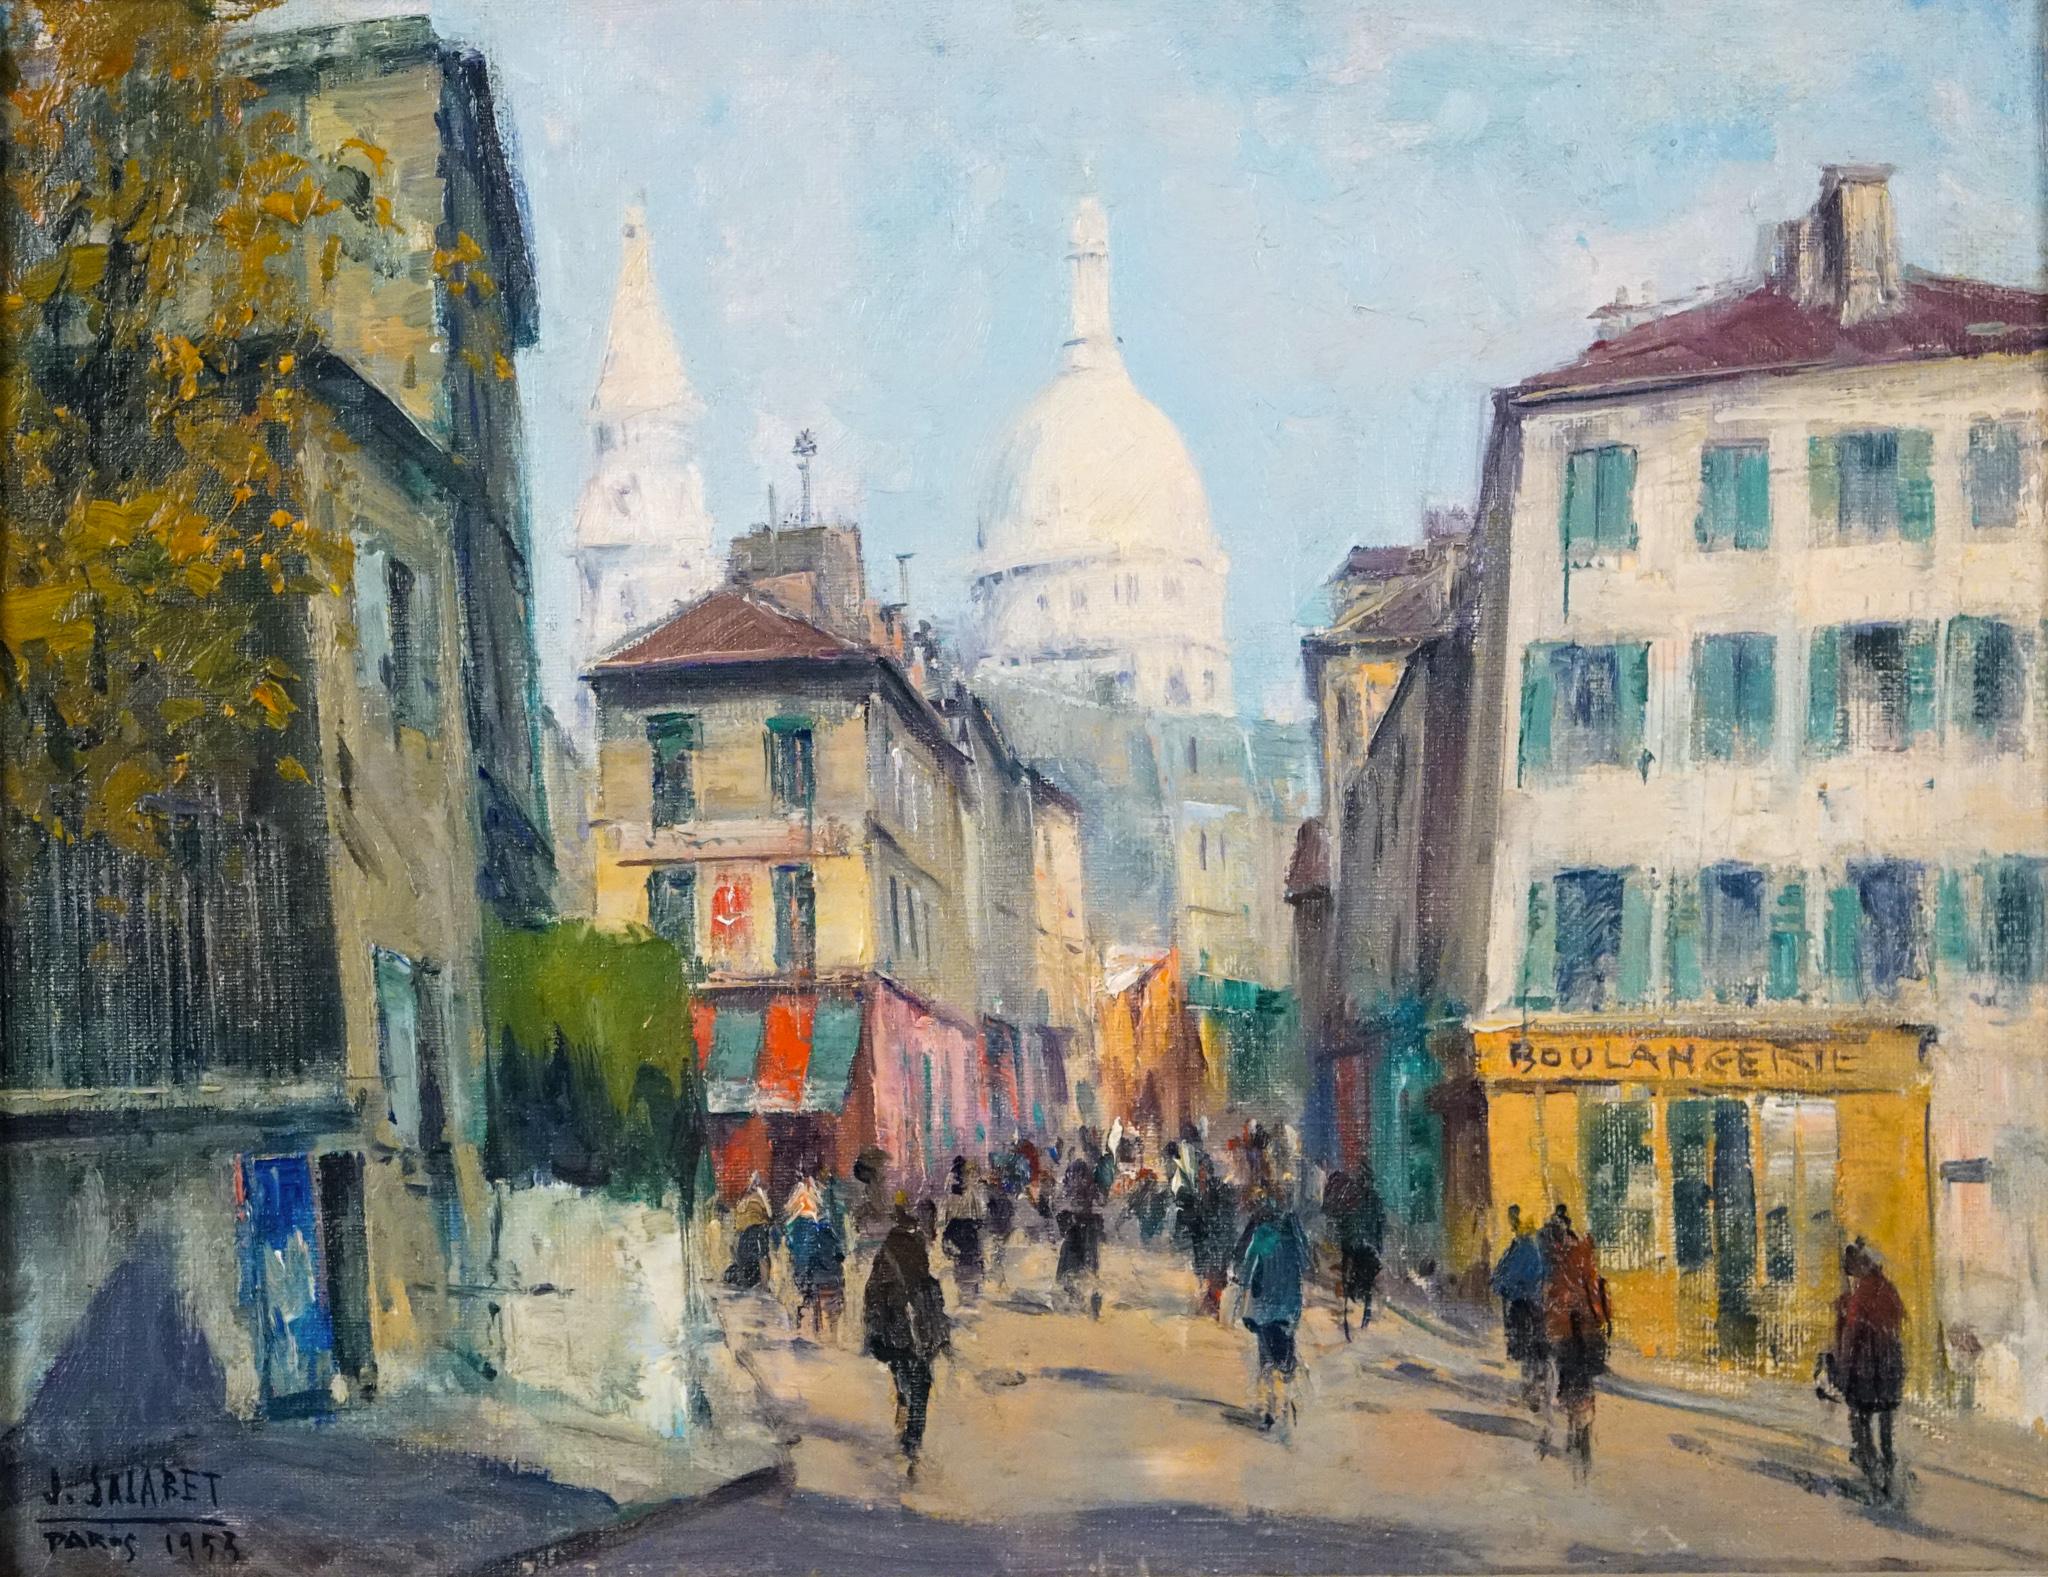 VUE DU SACRE COEUR - MONTMARTRE, PARIS - Painting by Jean Salabet